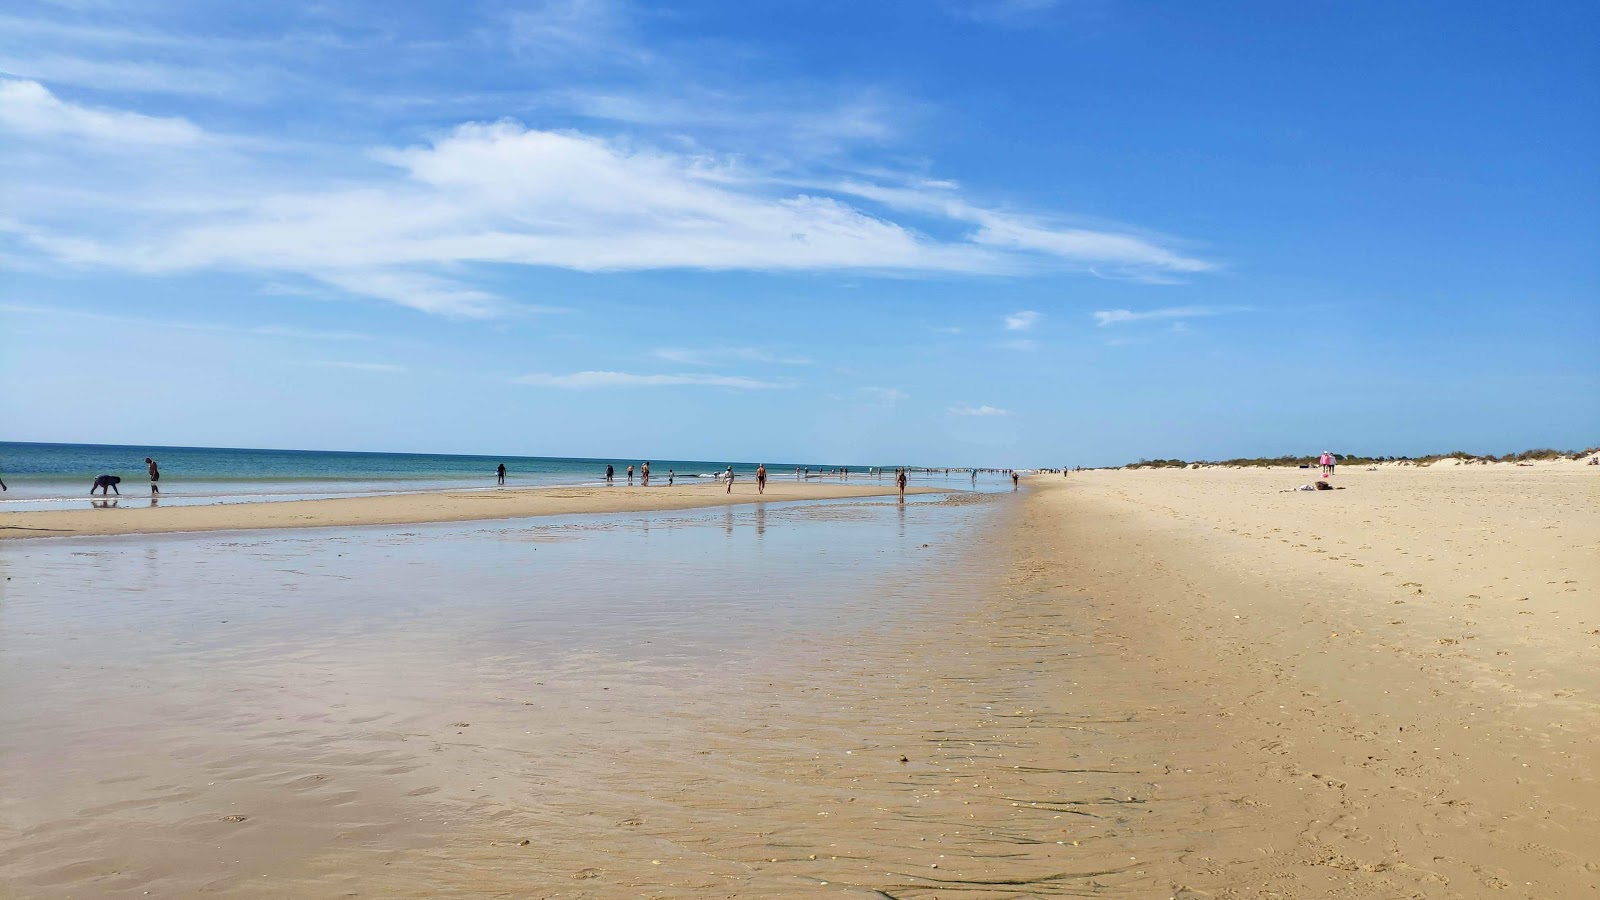 Manta Rota Plajı'in fotoğrafı parlak ince kum yüzey ile